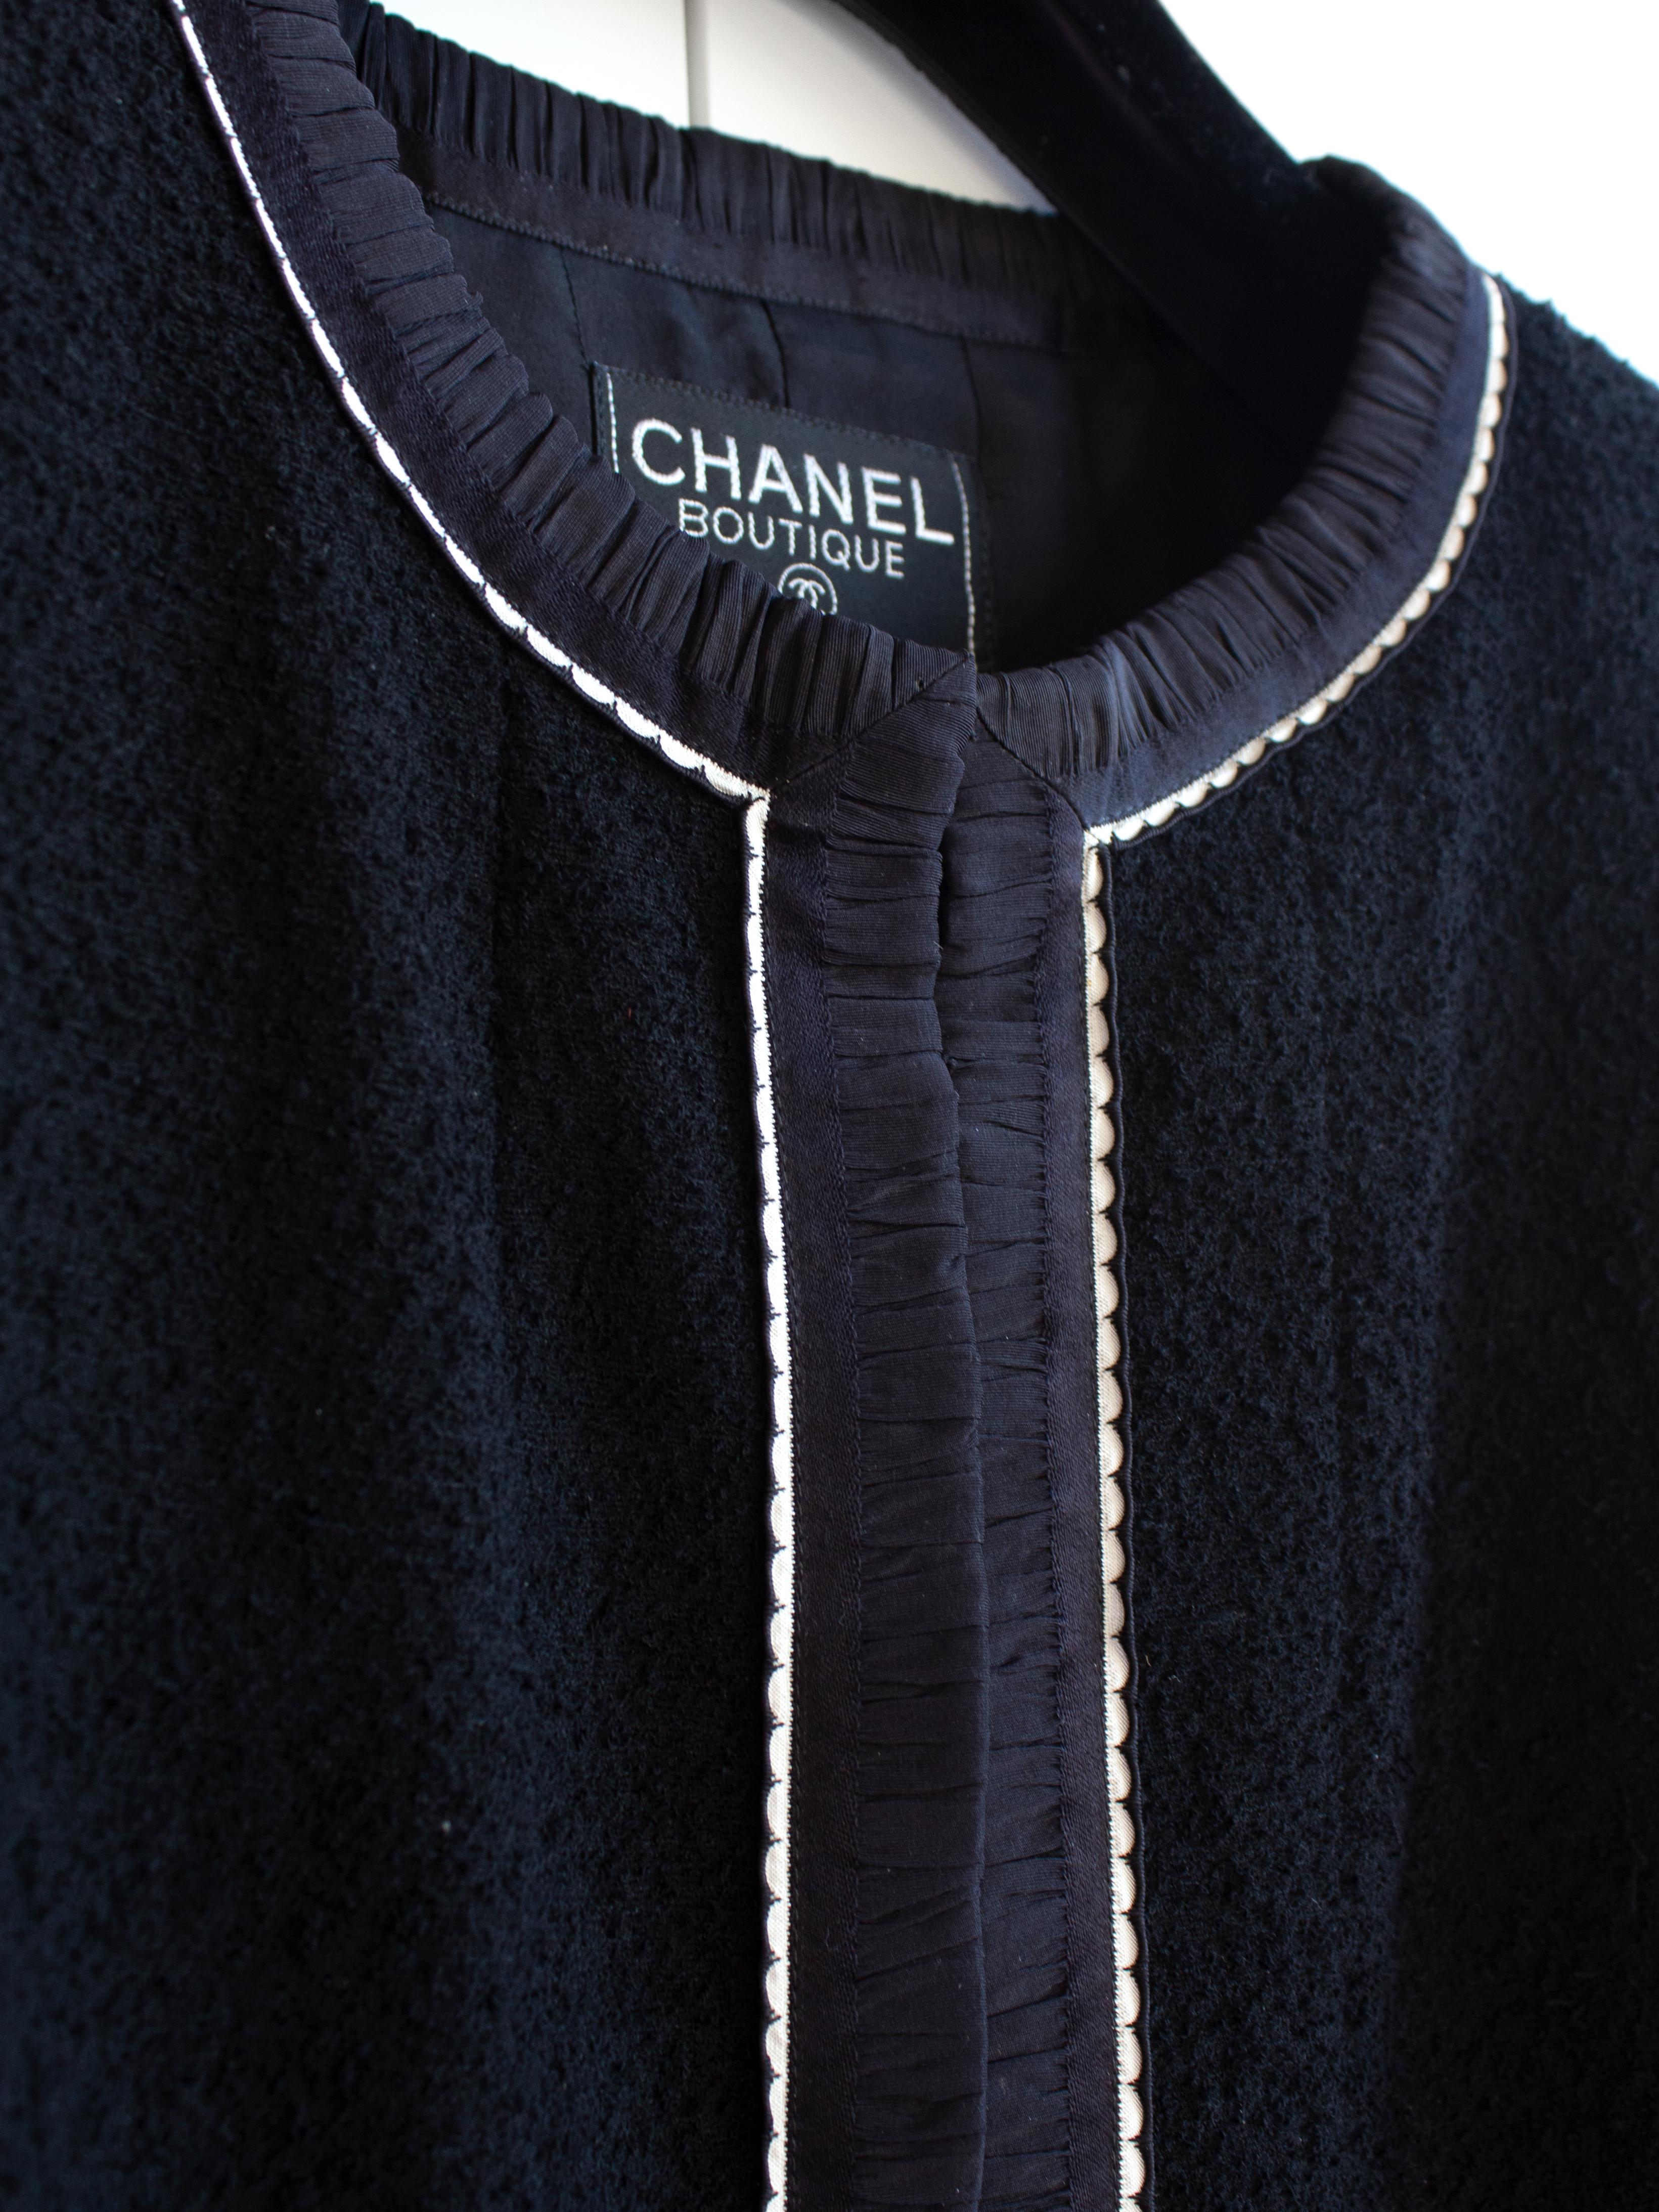 Tailleur jupe emblématique Chanel Vintage S/S1994 bleu marine et blanc bordé de bordures 94P 6